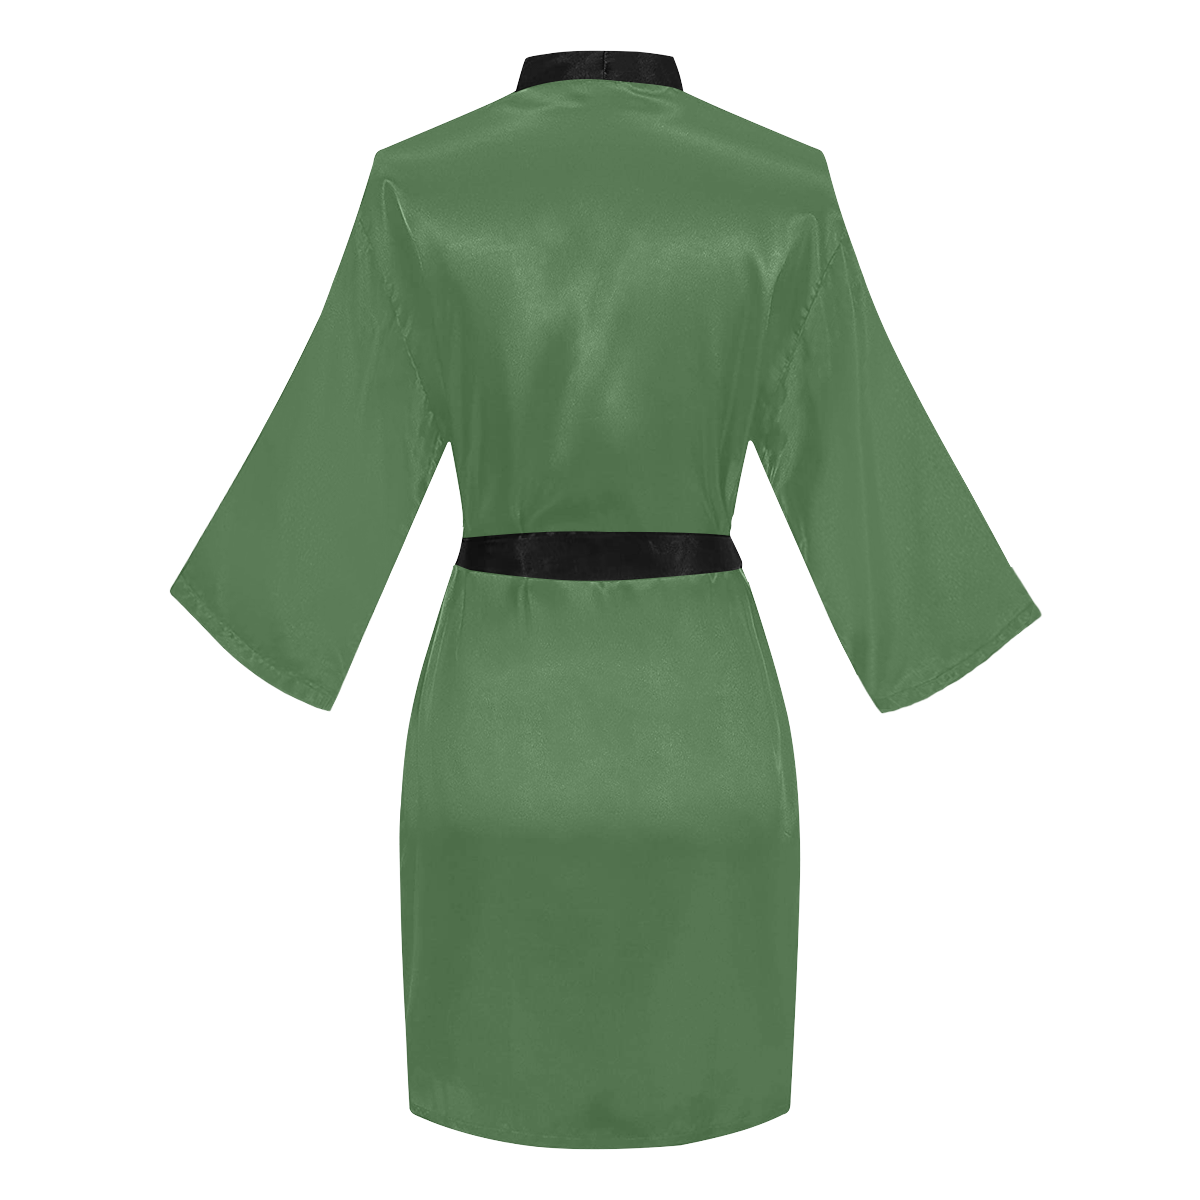 color artichoke green Long Sleeve Kimono Robe